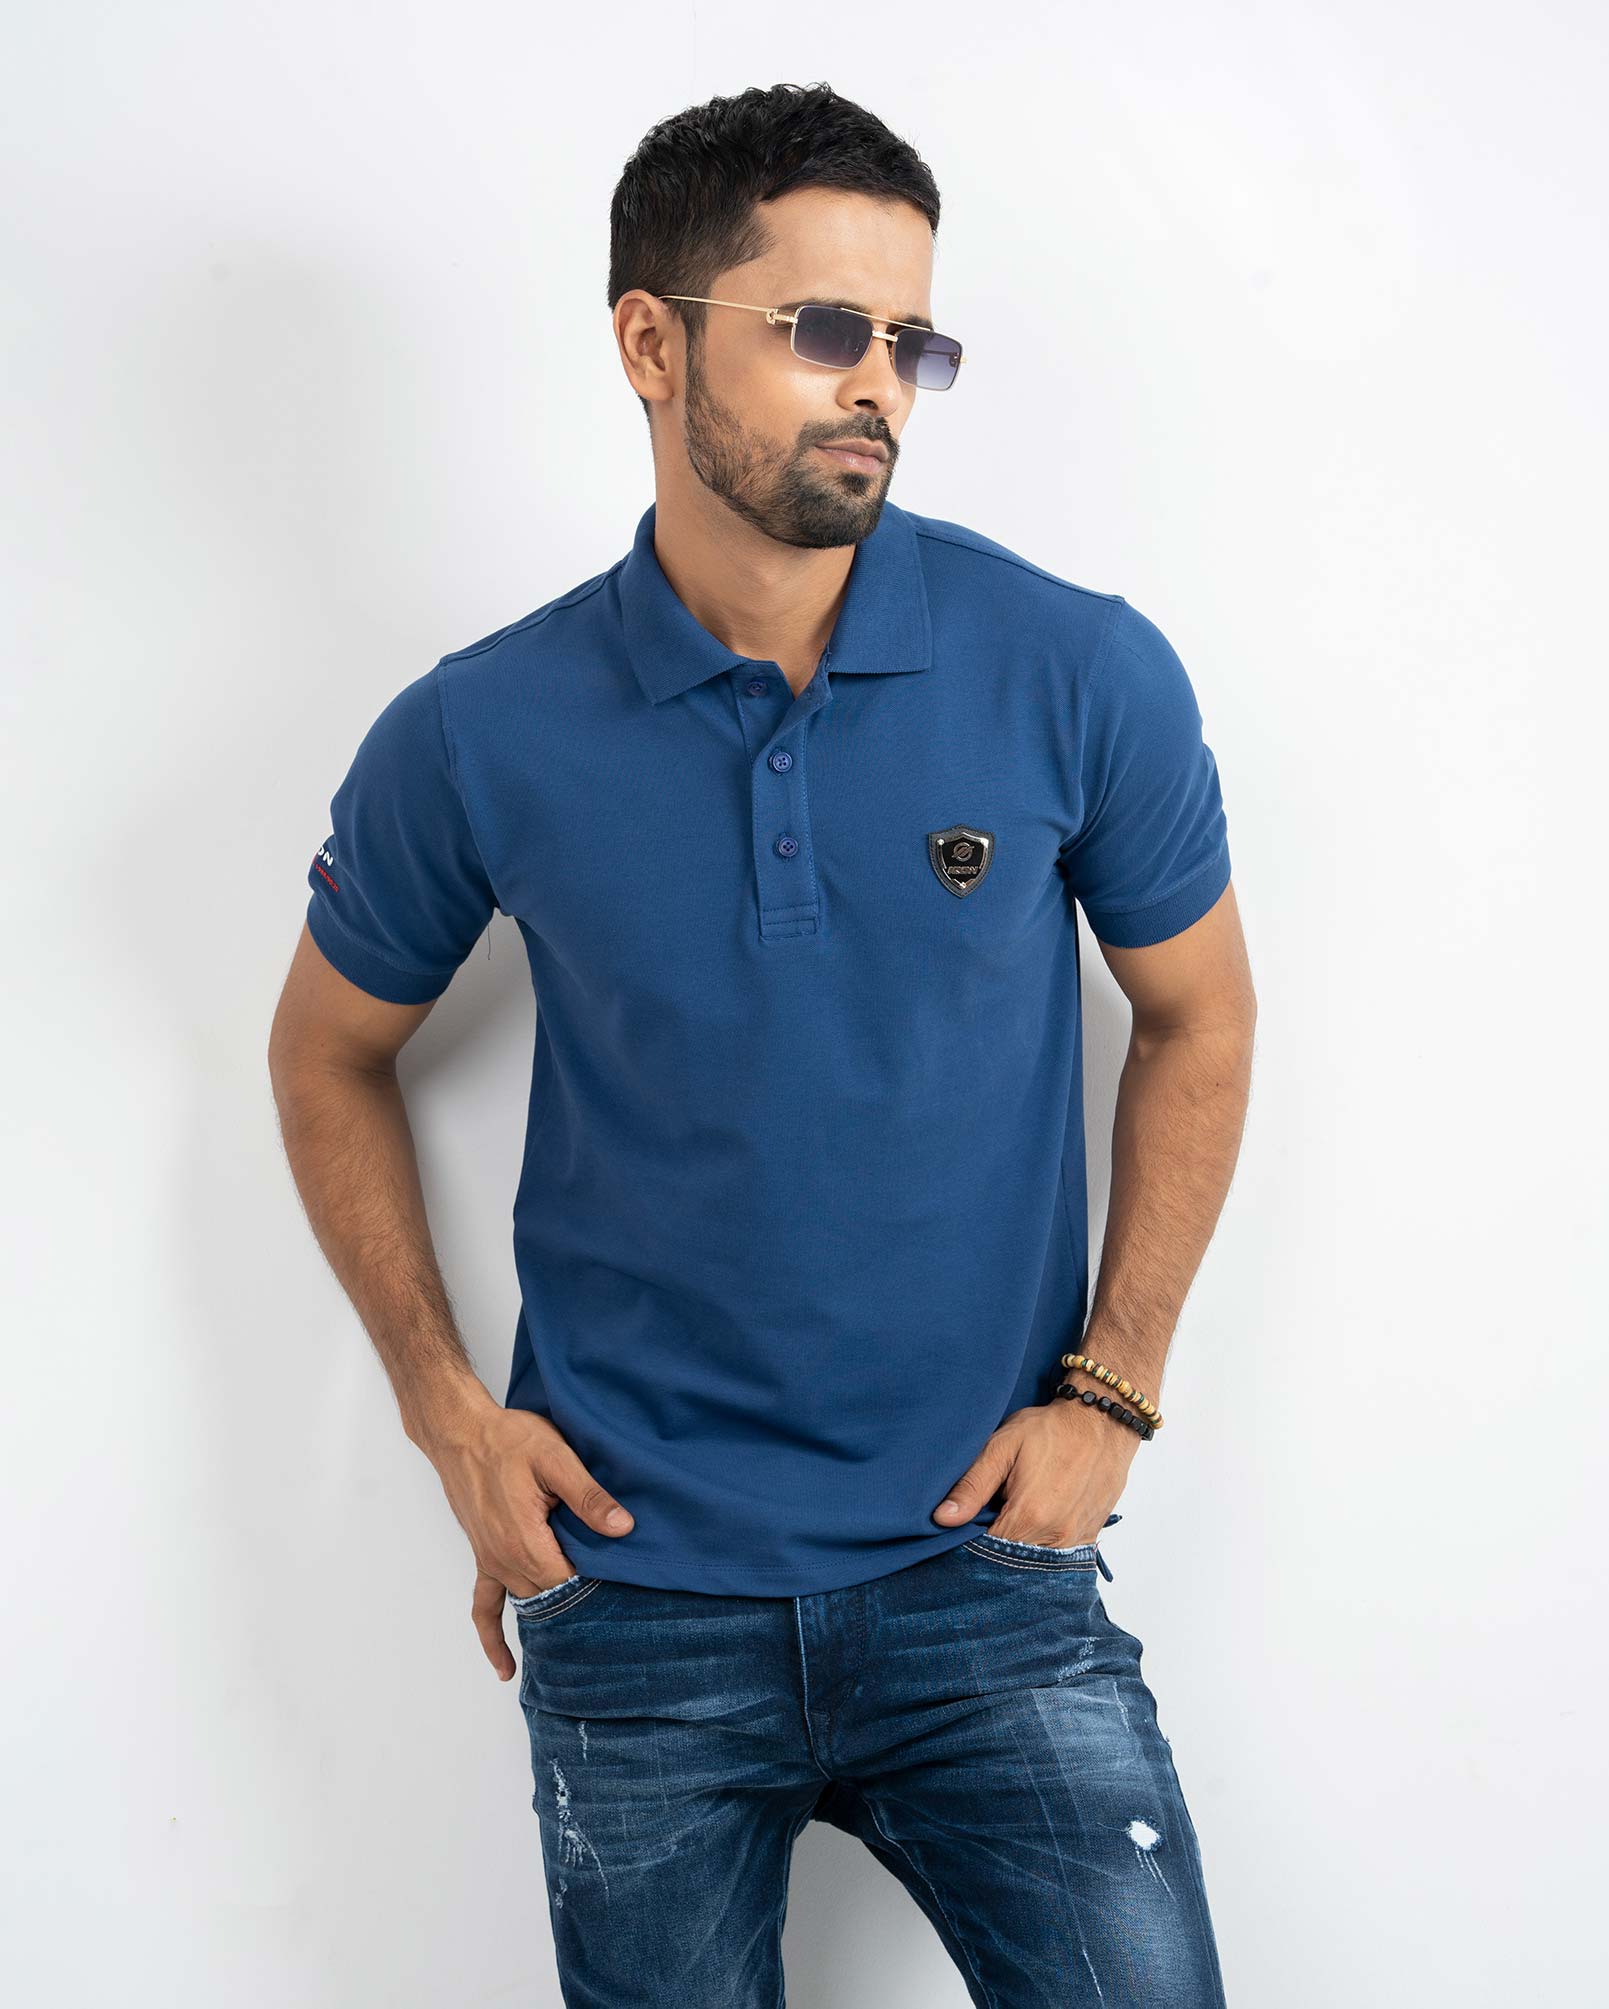 New Design Polo Shirt for Men - IQON Lifestyle